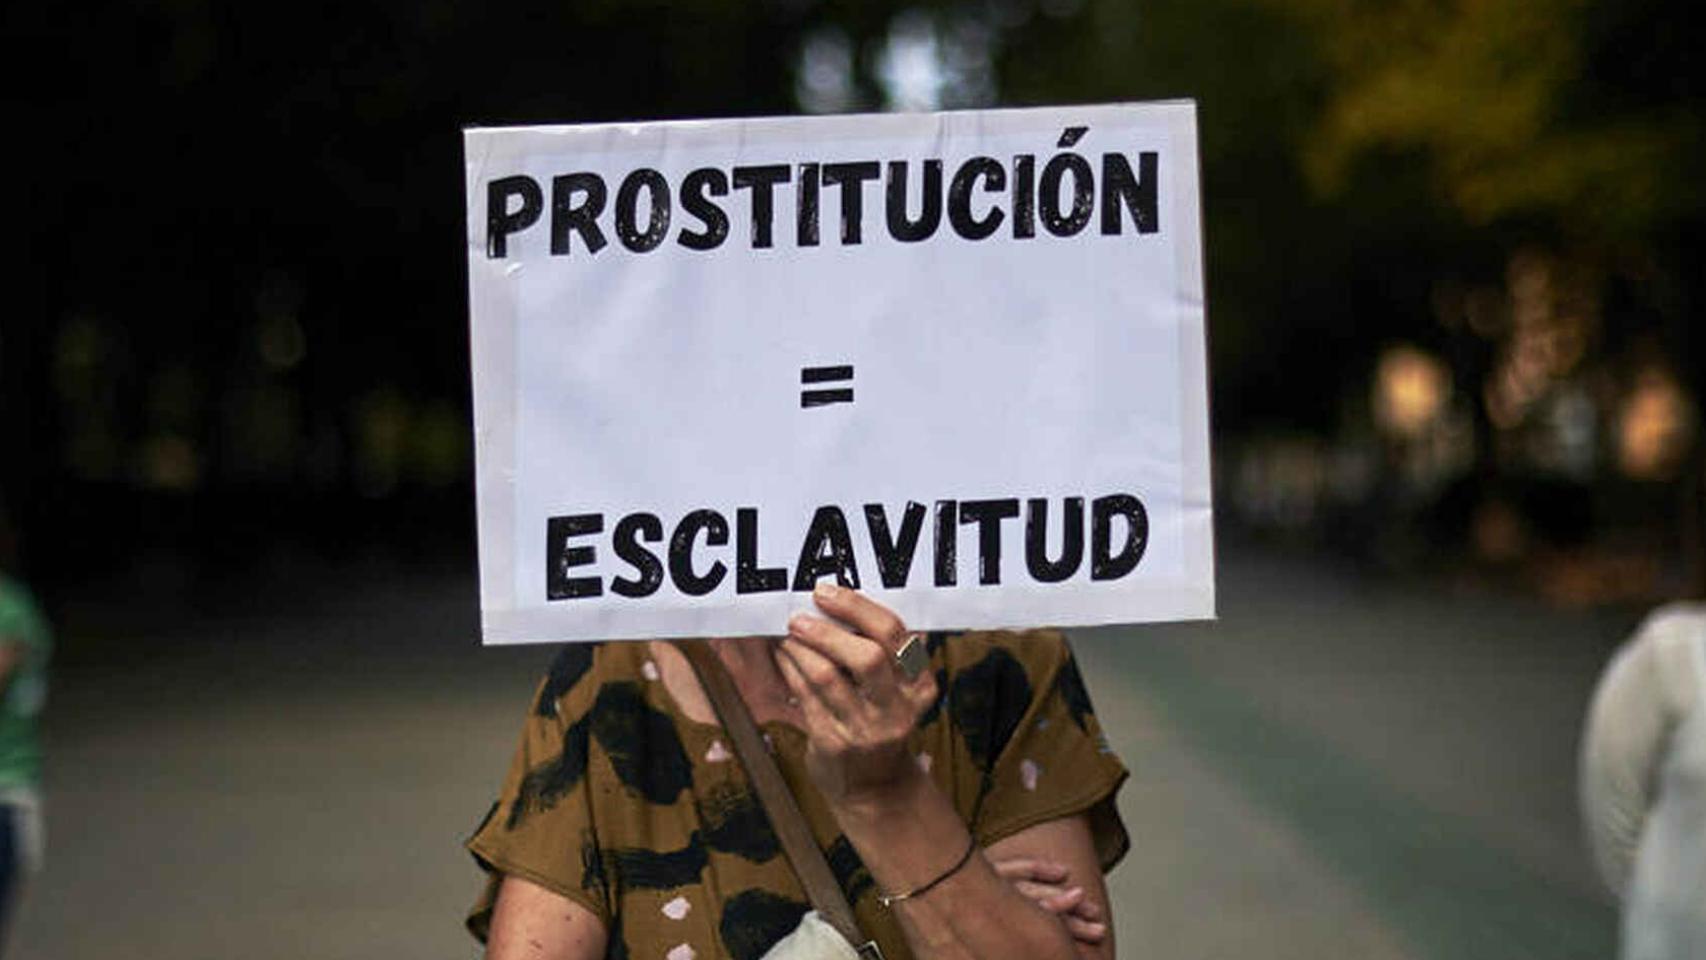 Ley Trans Y Abolición De La Prostitución Los Dos Temas Que Han Marcado La Agenda Feminista Este 6841